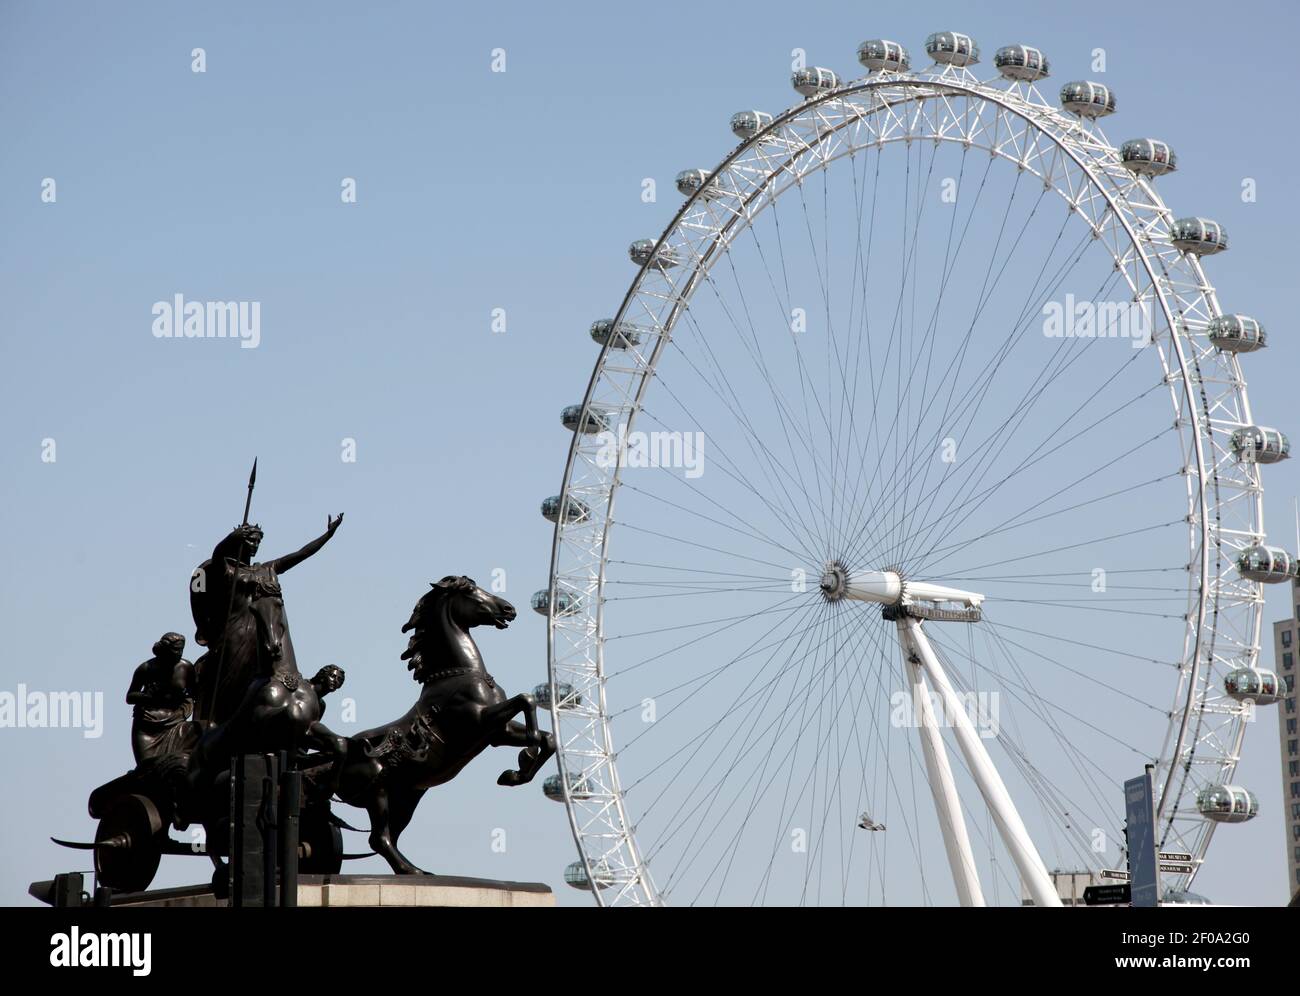 25 avril 2011. Londres, Angleterre. Observation des pods au London Eye on the Thames. La « roue millénaire » est la plus grande roue ferris d'Europe et est l'attraction touristique payante la plus populaire de Grande-Bretagne. Crédit photo: Charlie Varley/Sipa USA Banque D'Images